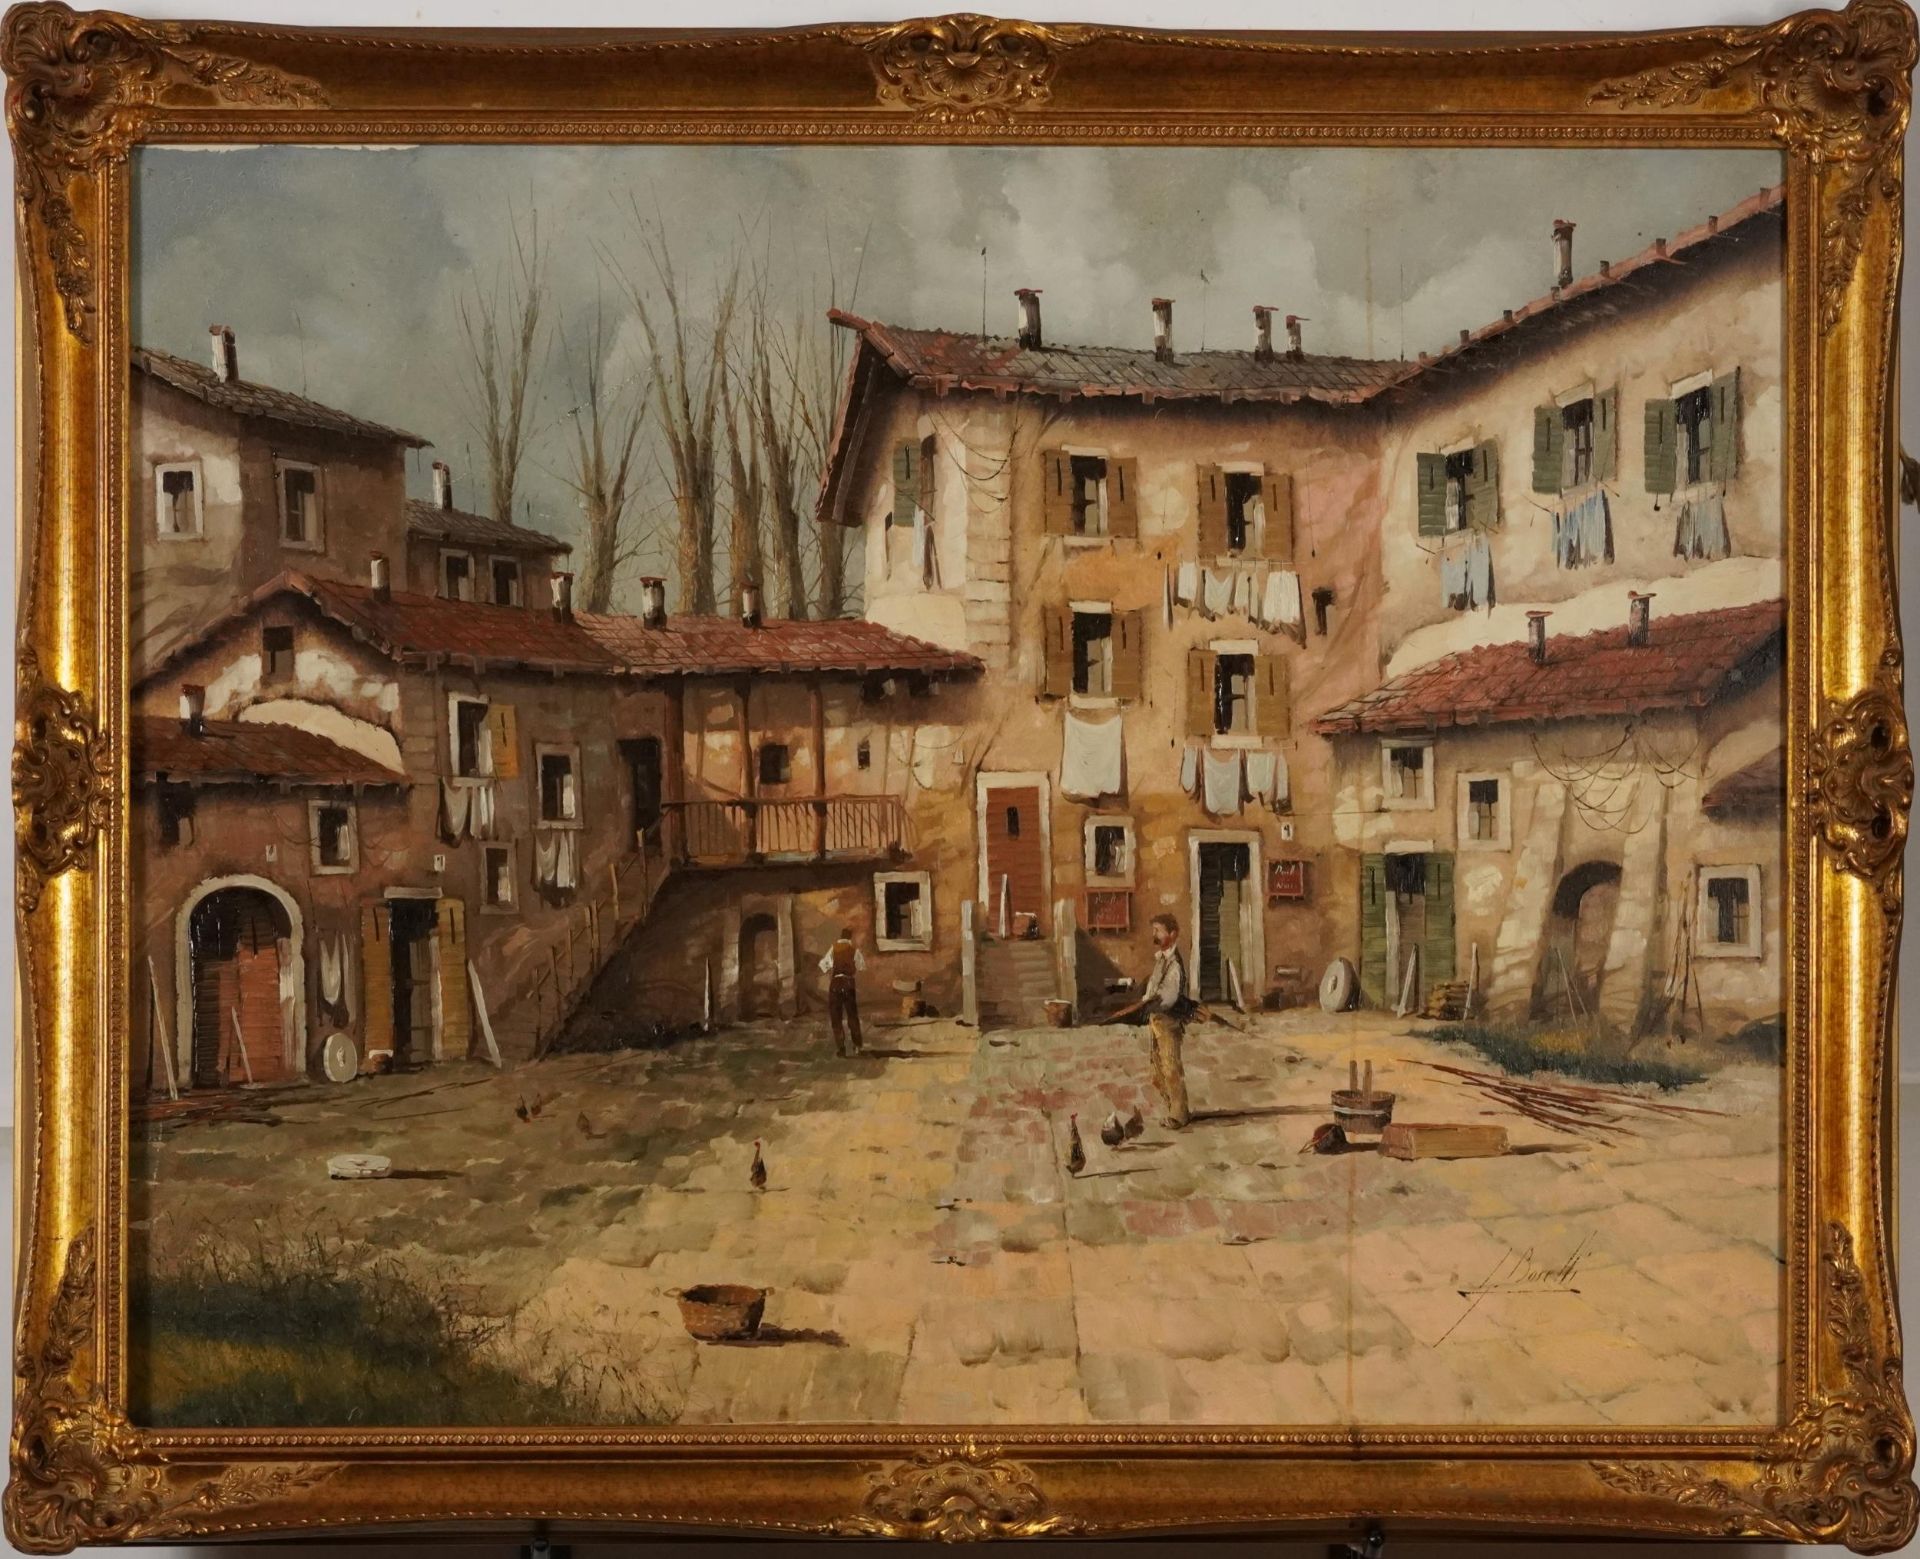 Guido Borelli - Italian courtyard, Italian Impressionist oil on canvas, framed, 80cm x 60cm - Bild 2 aus 5